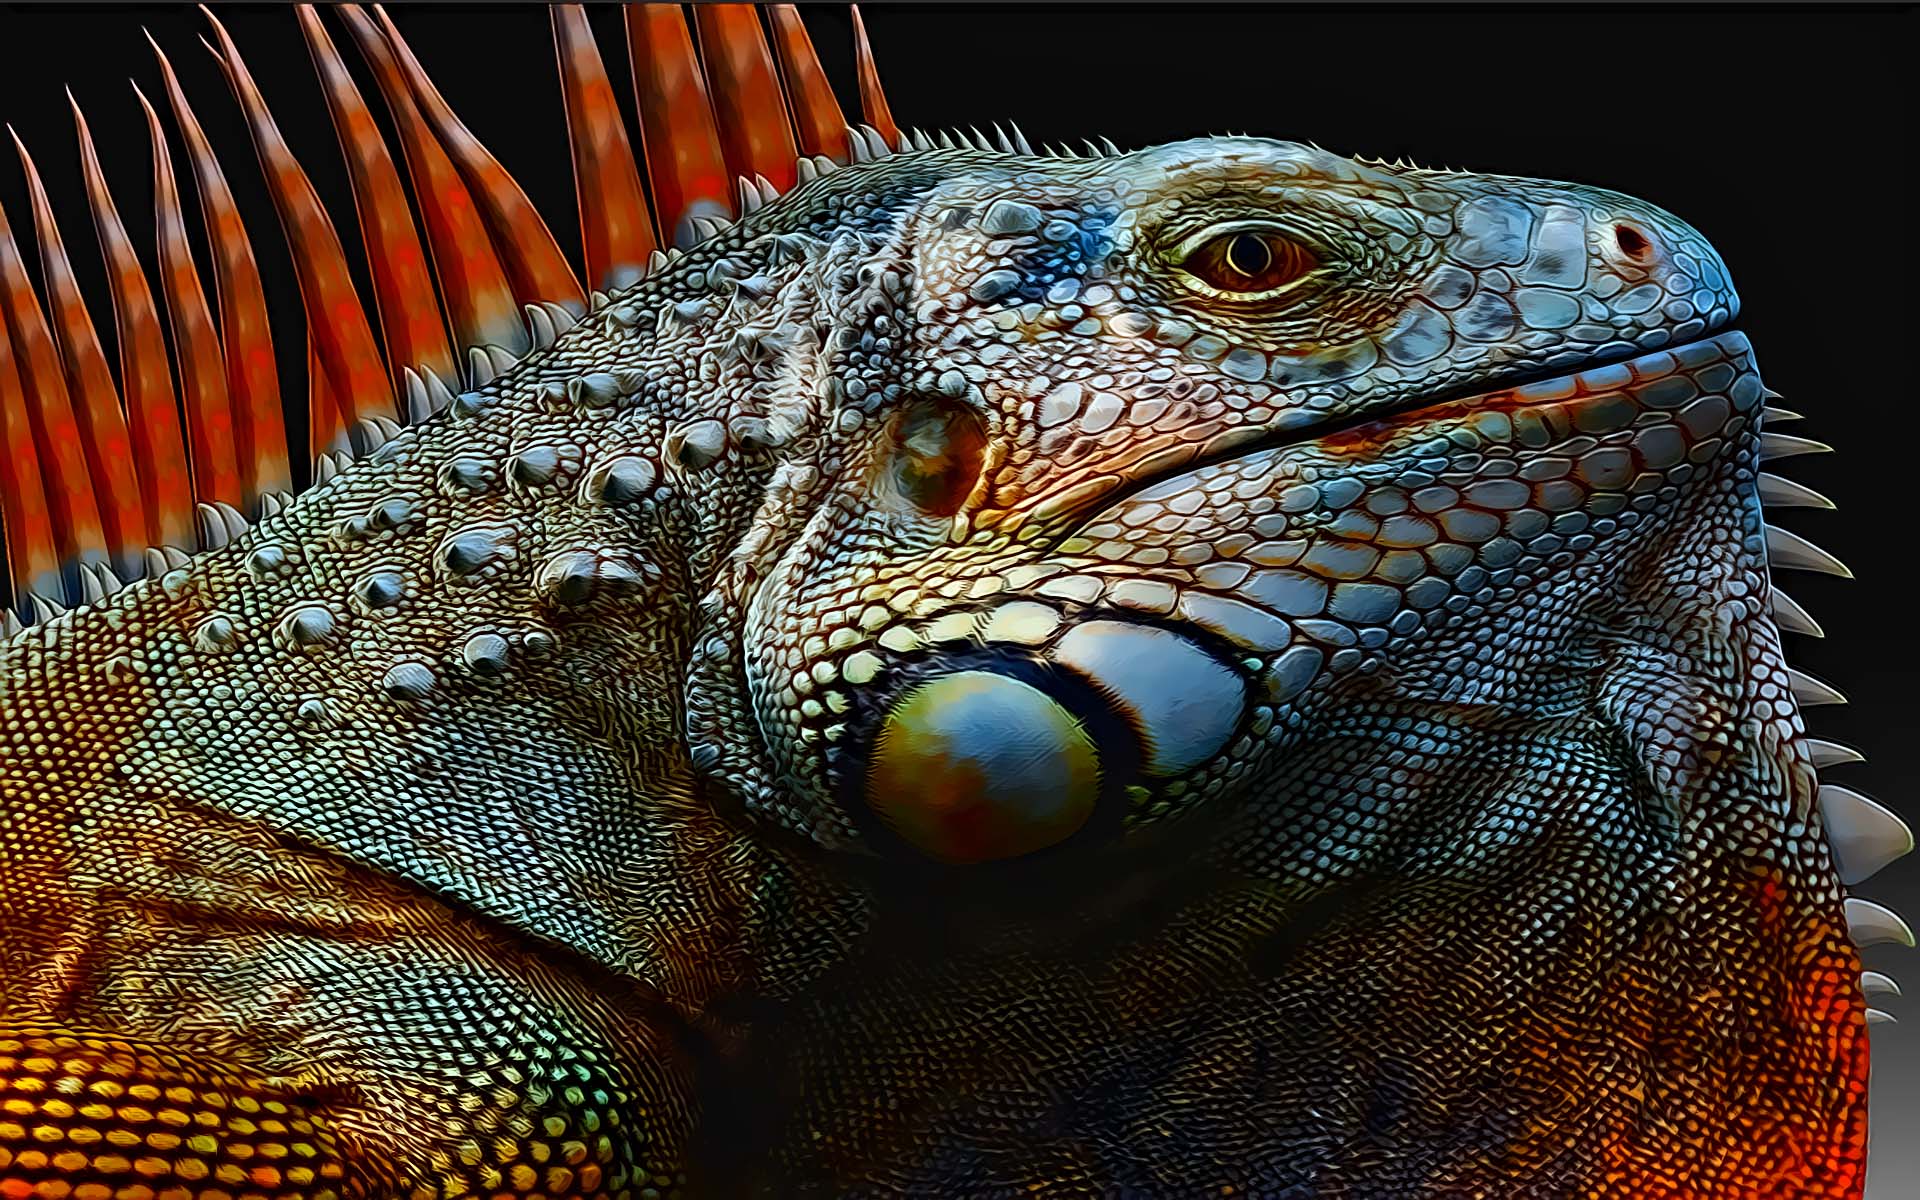 Free download wallpaper Animal, Iguana on your PC desktop